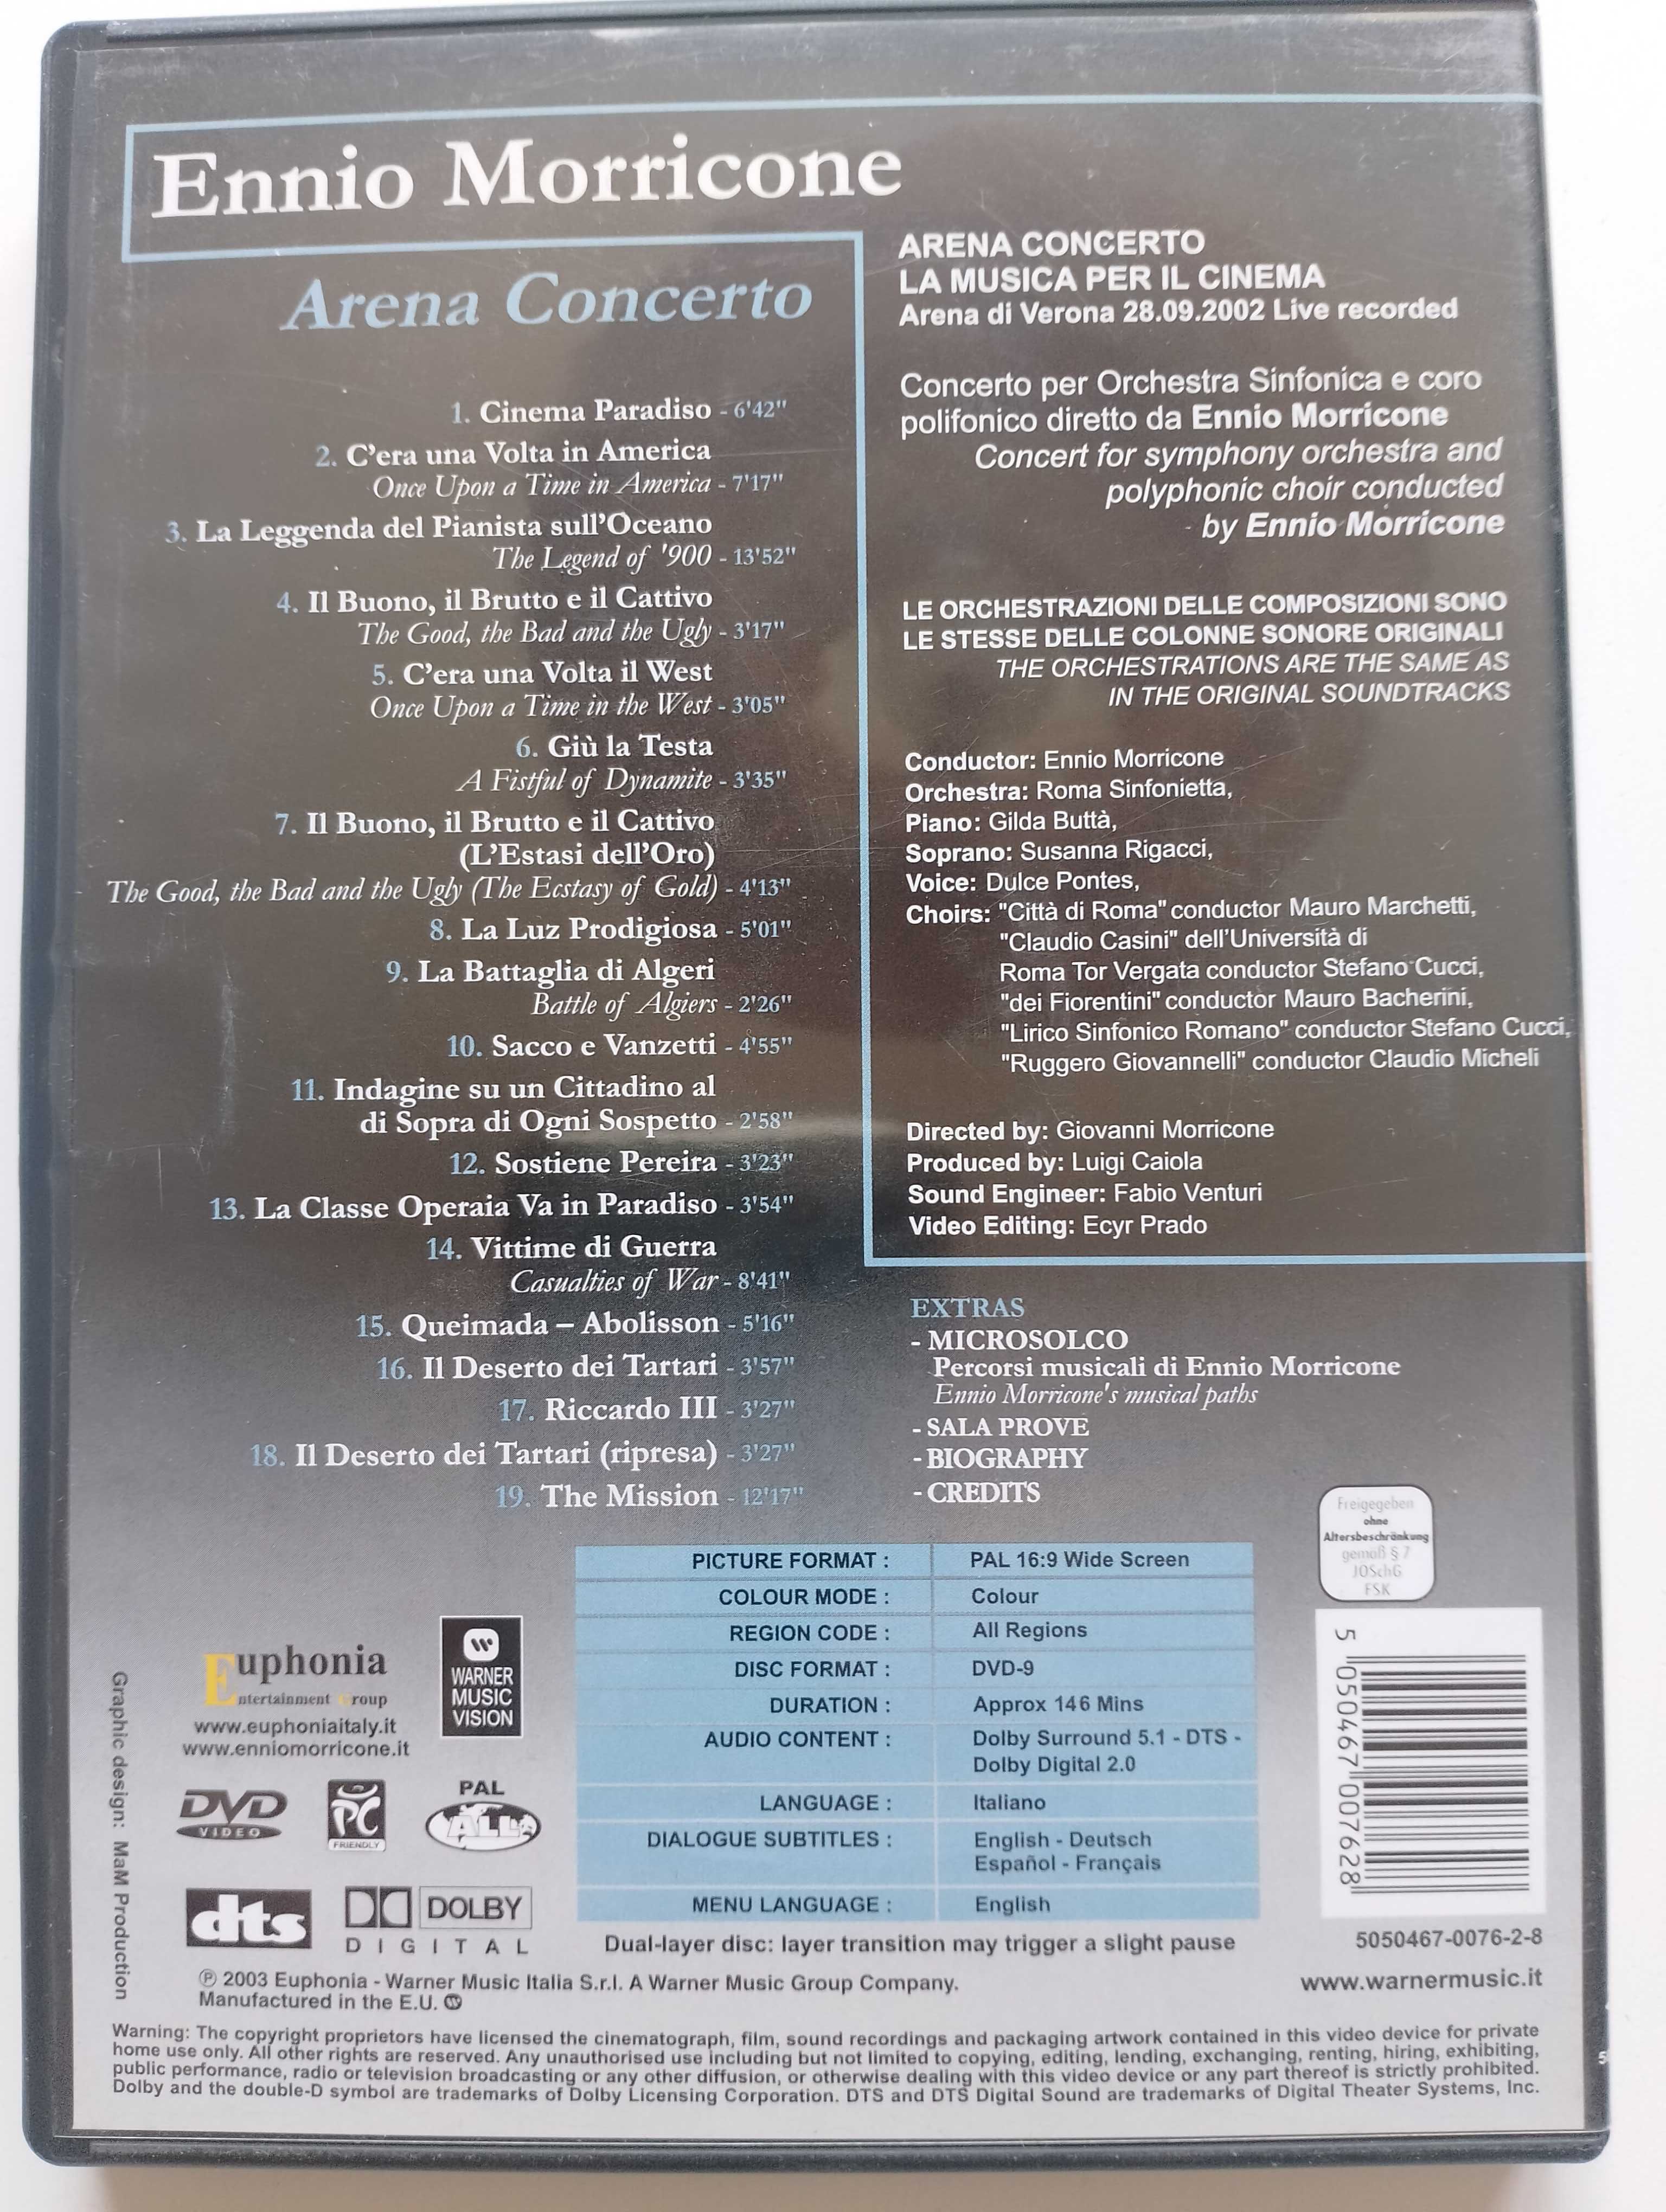 Ennio Morricone: Arena Concerto DVD